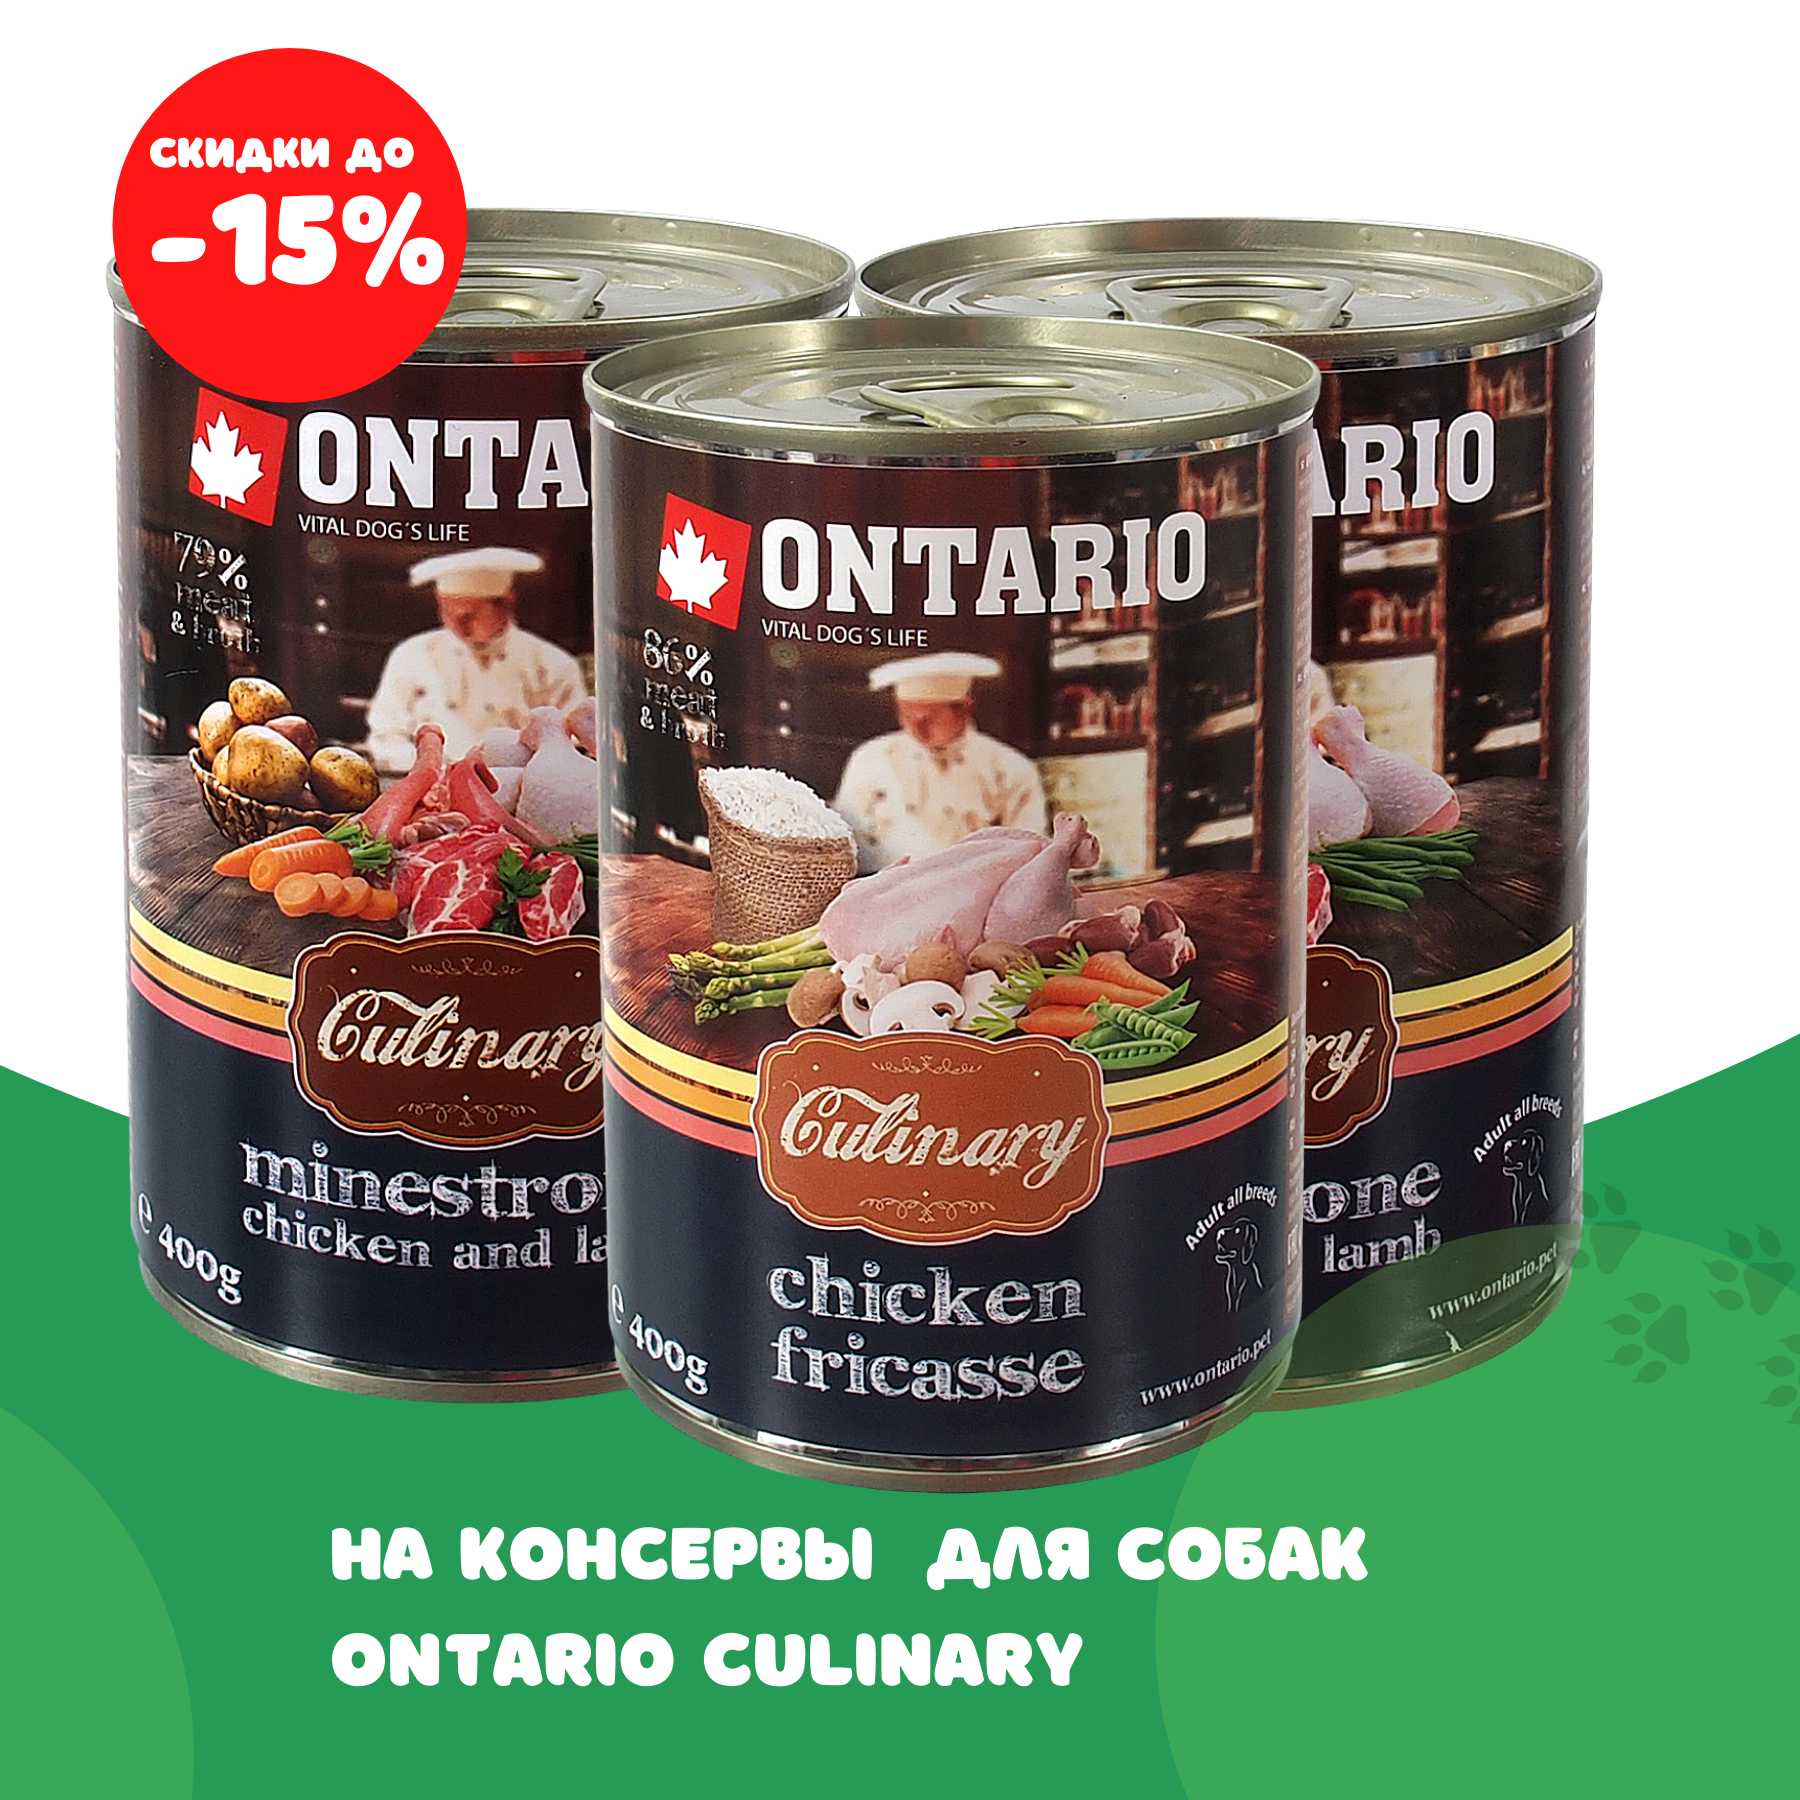 Скидка на консервы для собак Ontario Culinary 15%